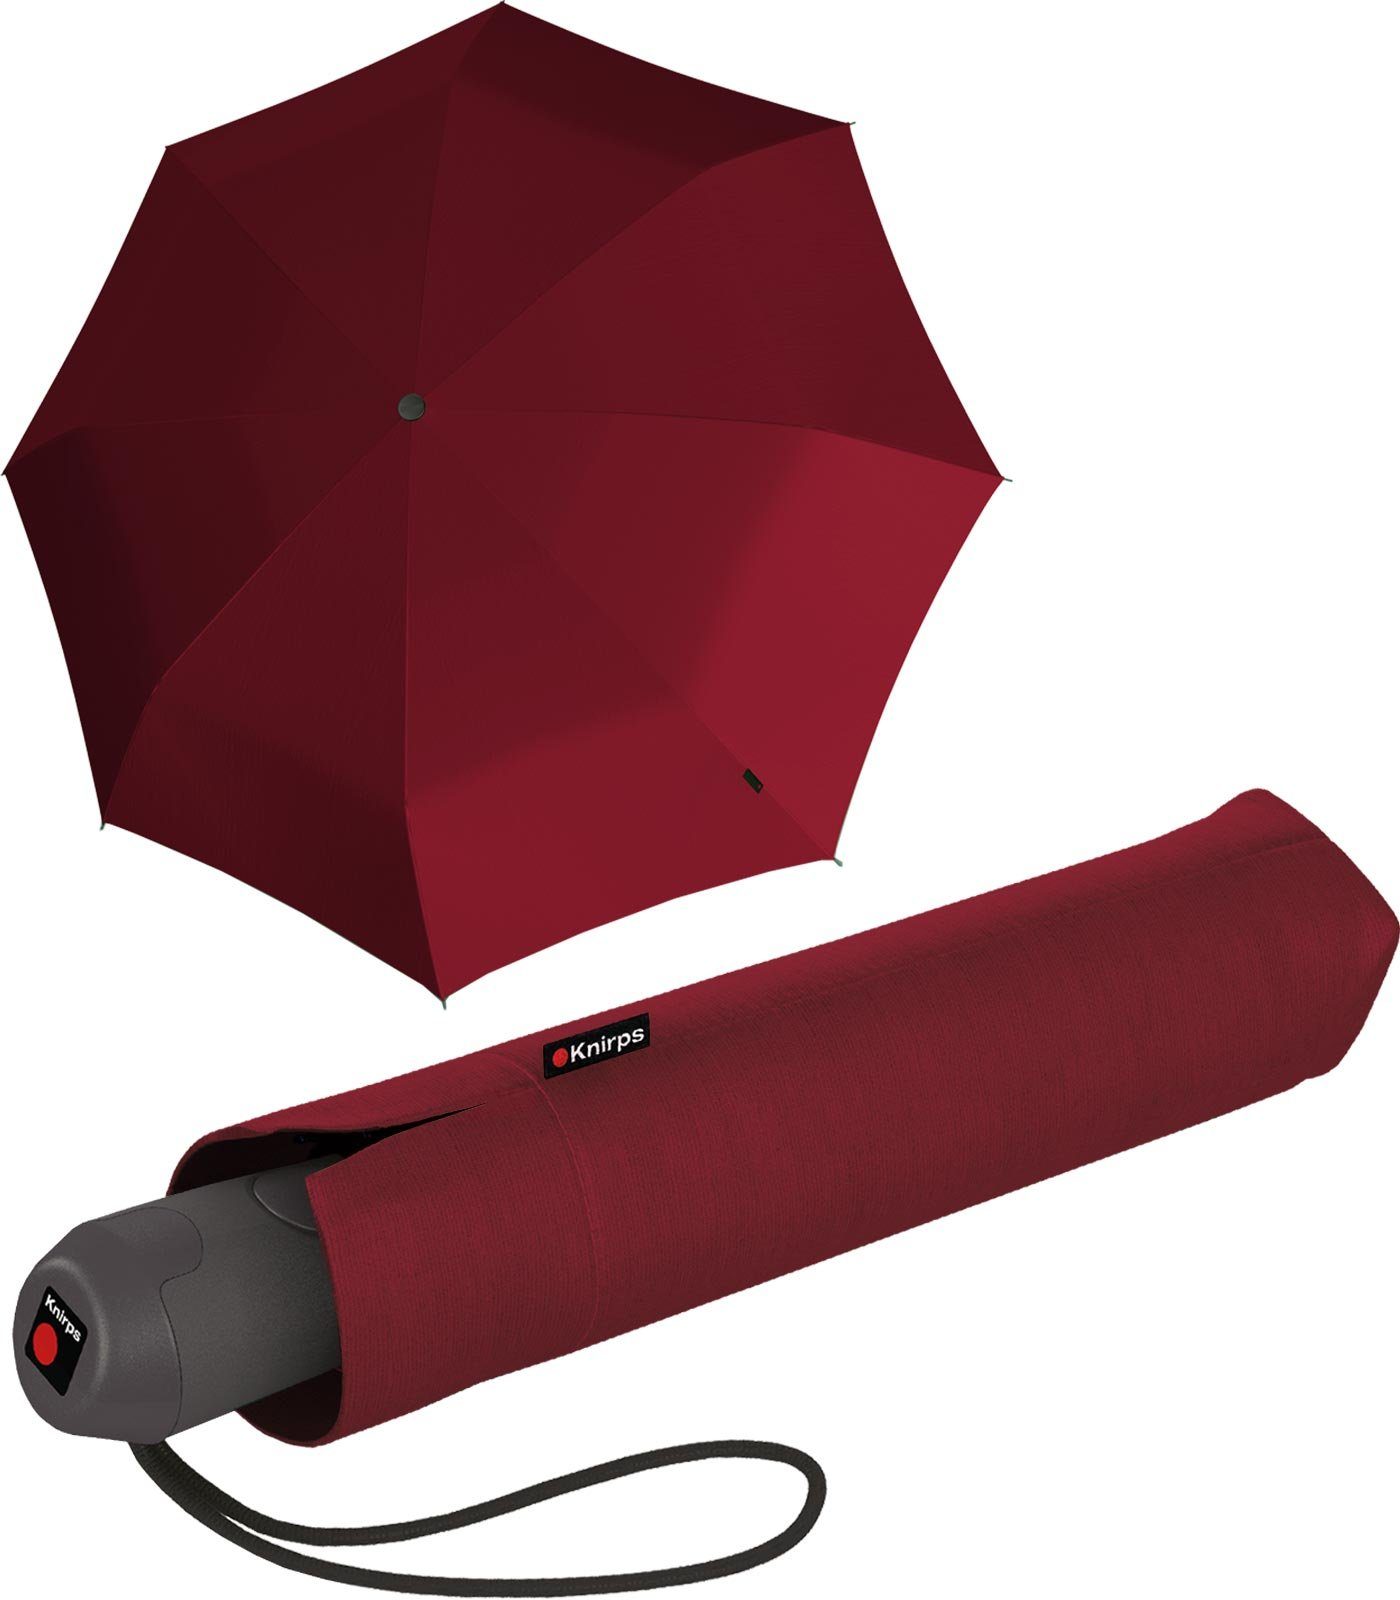 Knirps® Taschenregenschirm E.200 Duomatic Schirm mit Auf-Zu-Automatik, stabil und elegant bordeaux